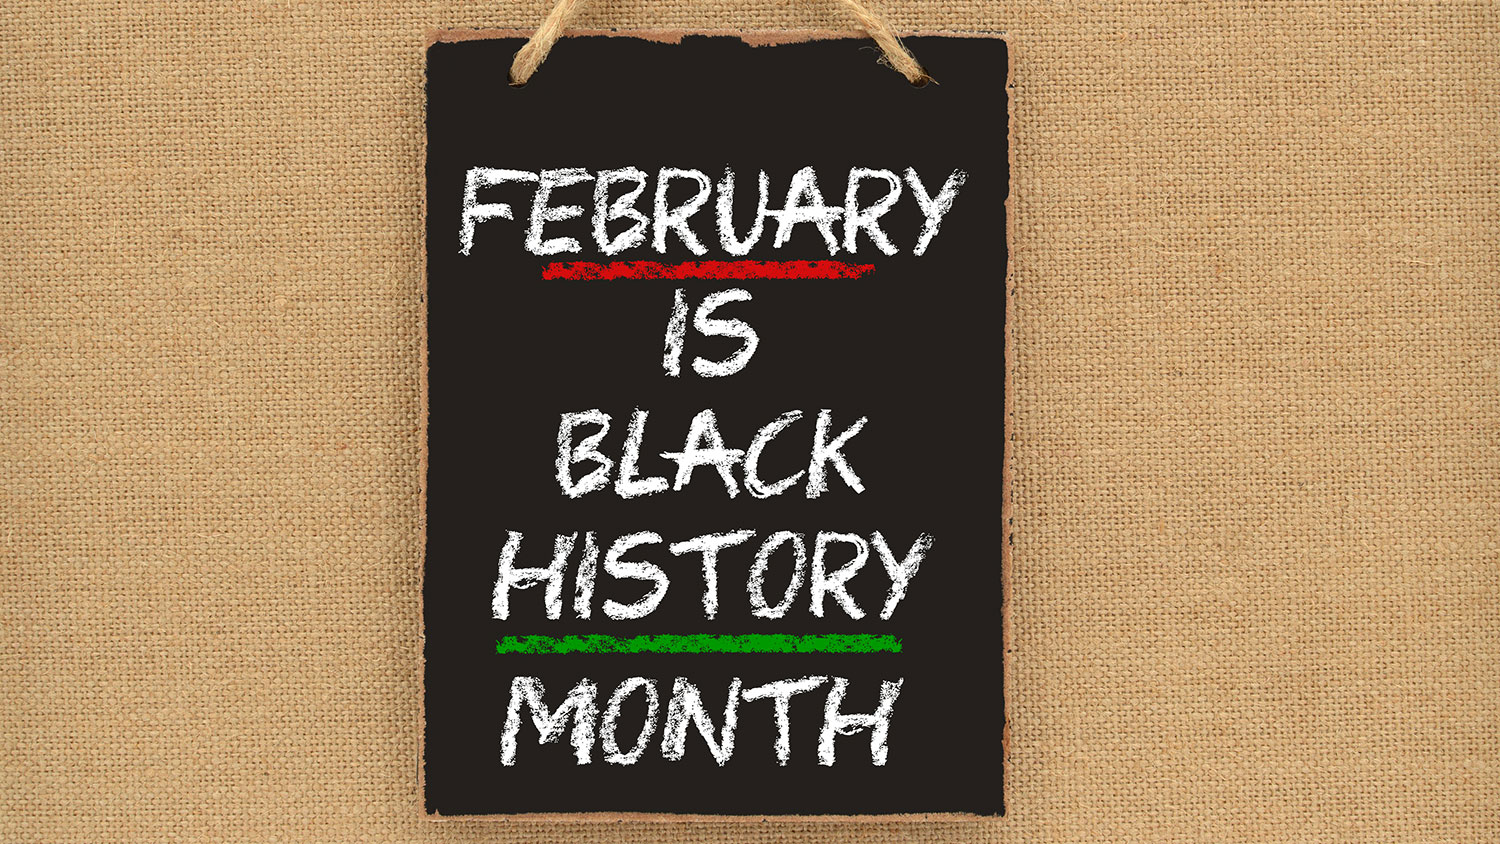 Black History Month written on a chalkboard